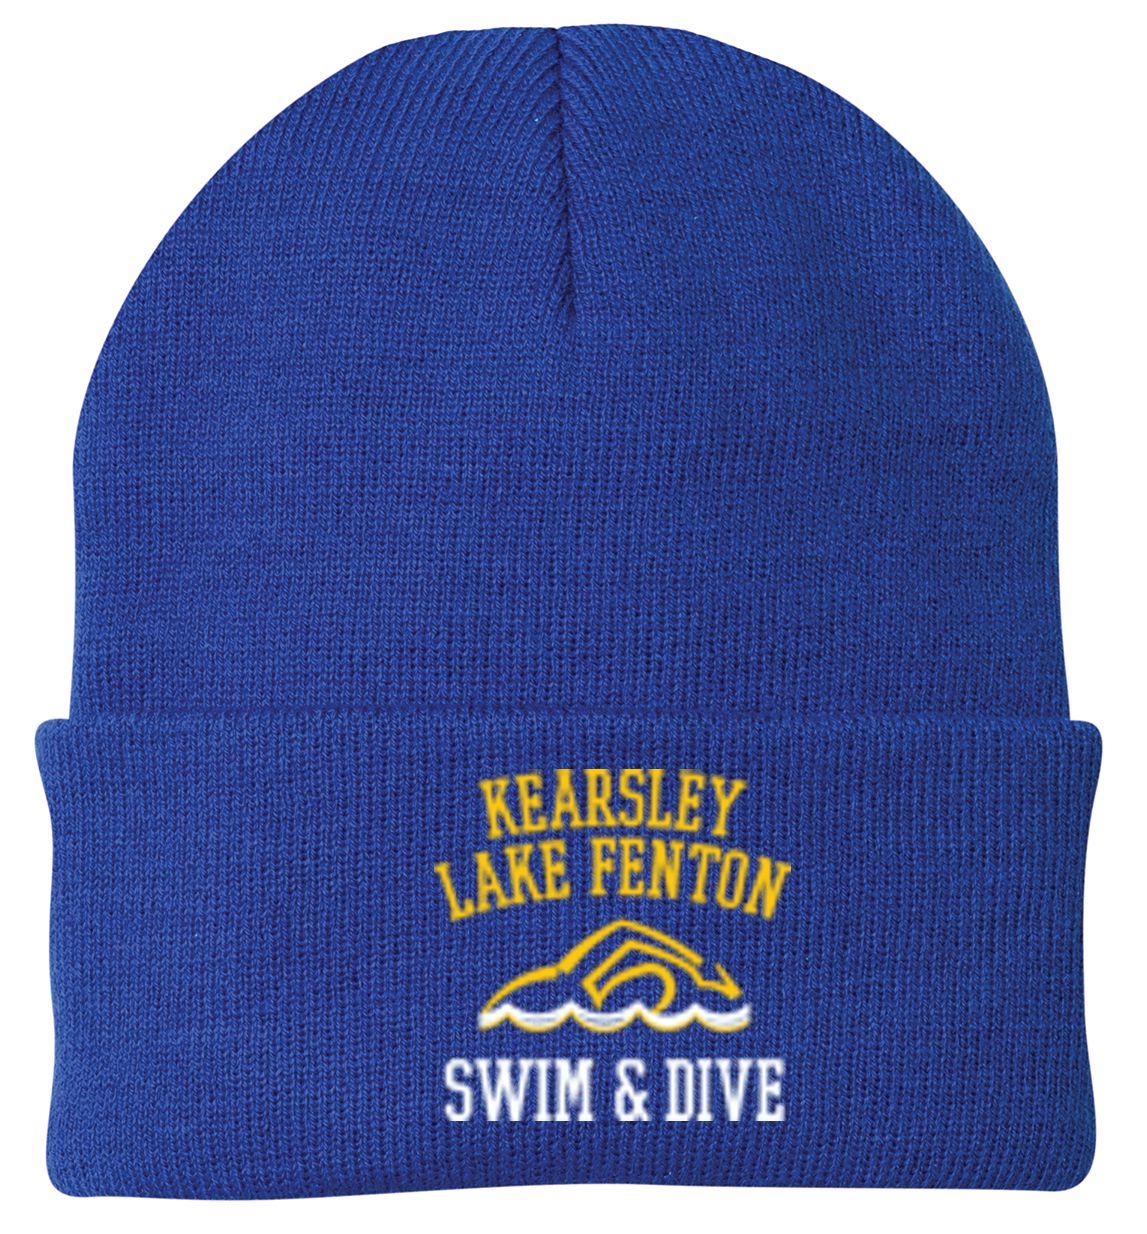 Kearsley - Lake Fenton Swim & Dive Knit Cap